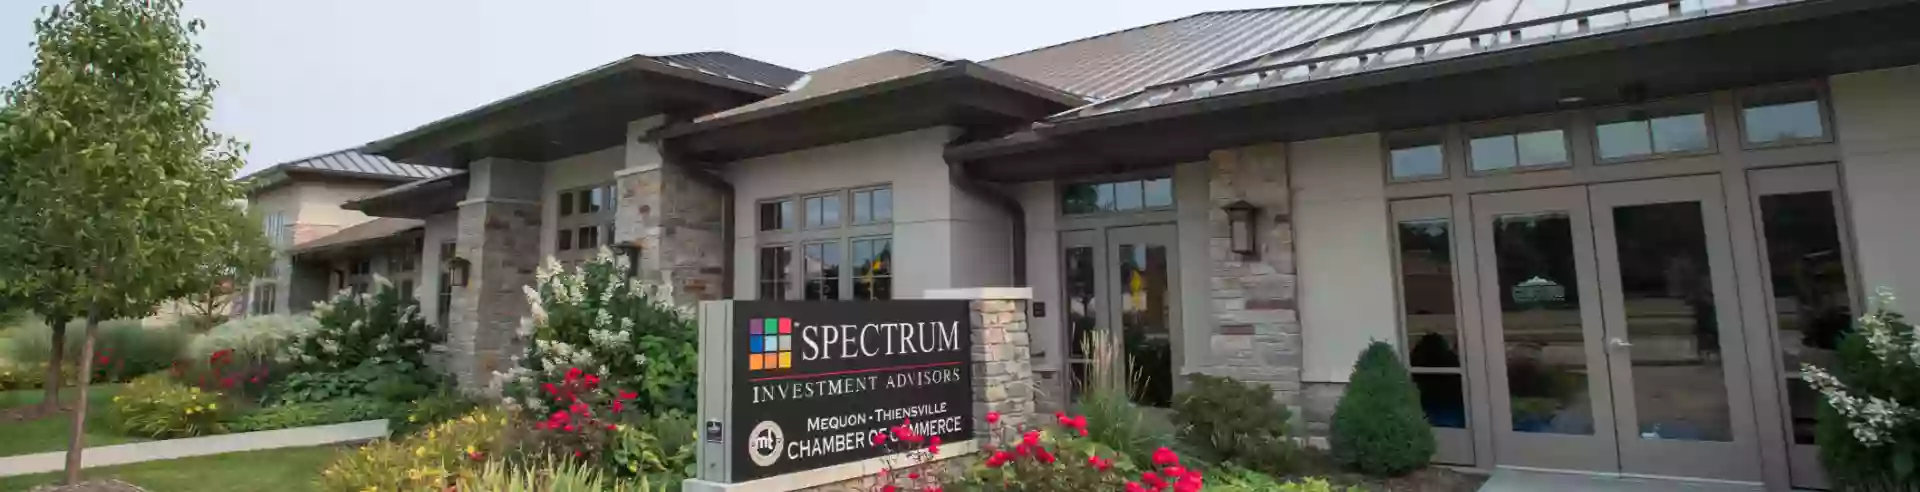 Spectrum Investment Advisors, Inc